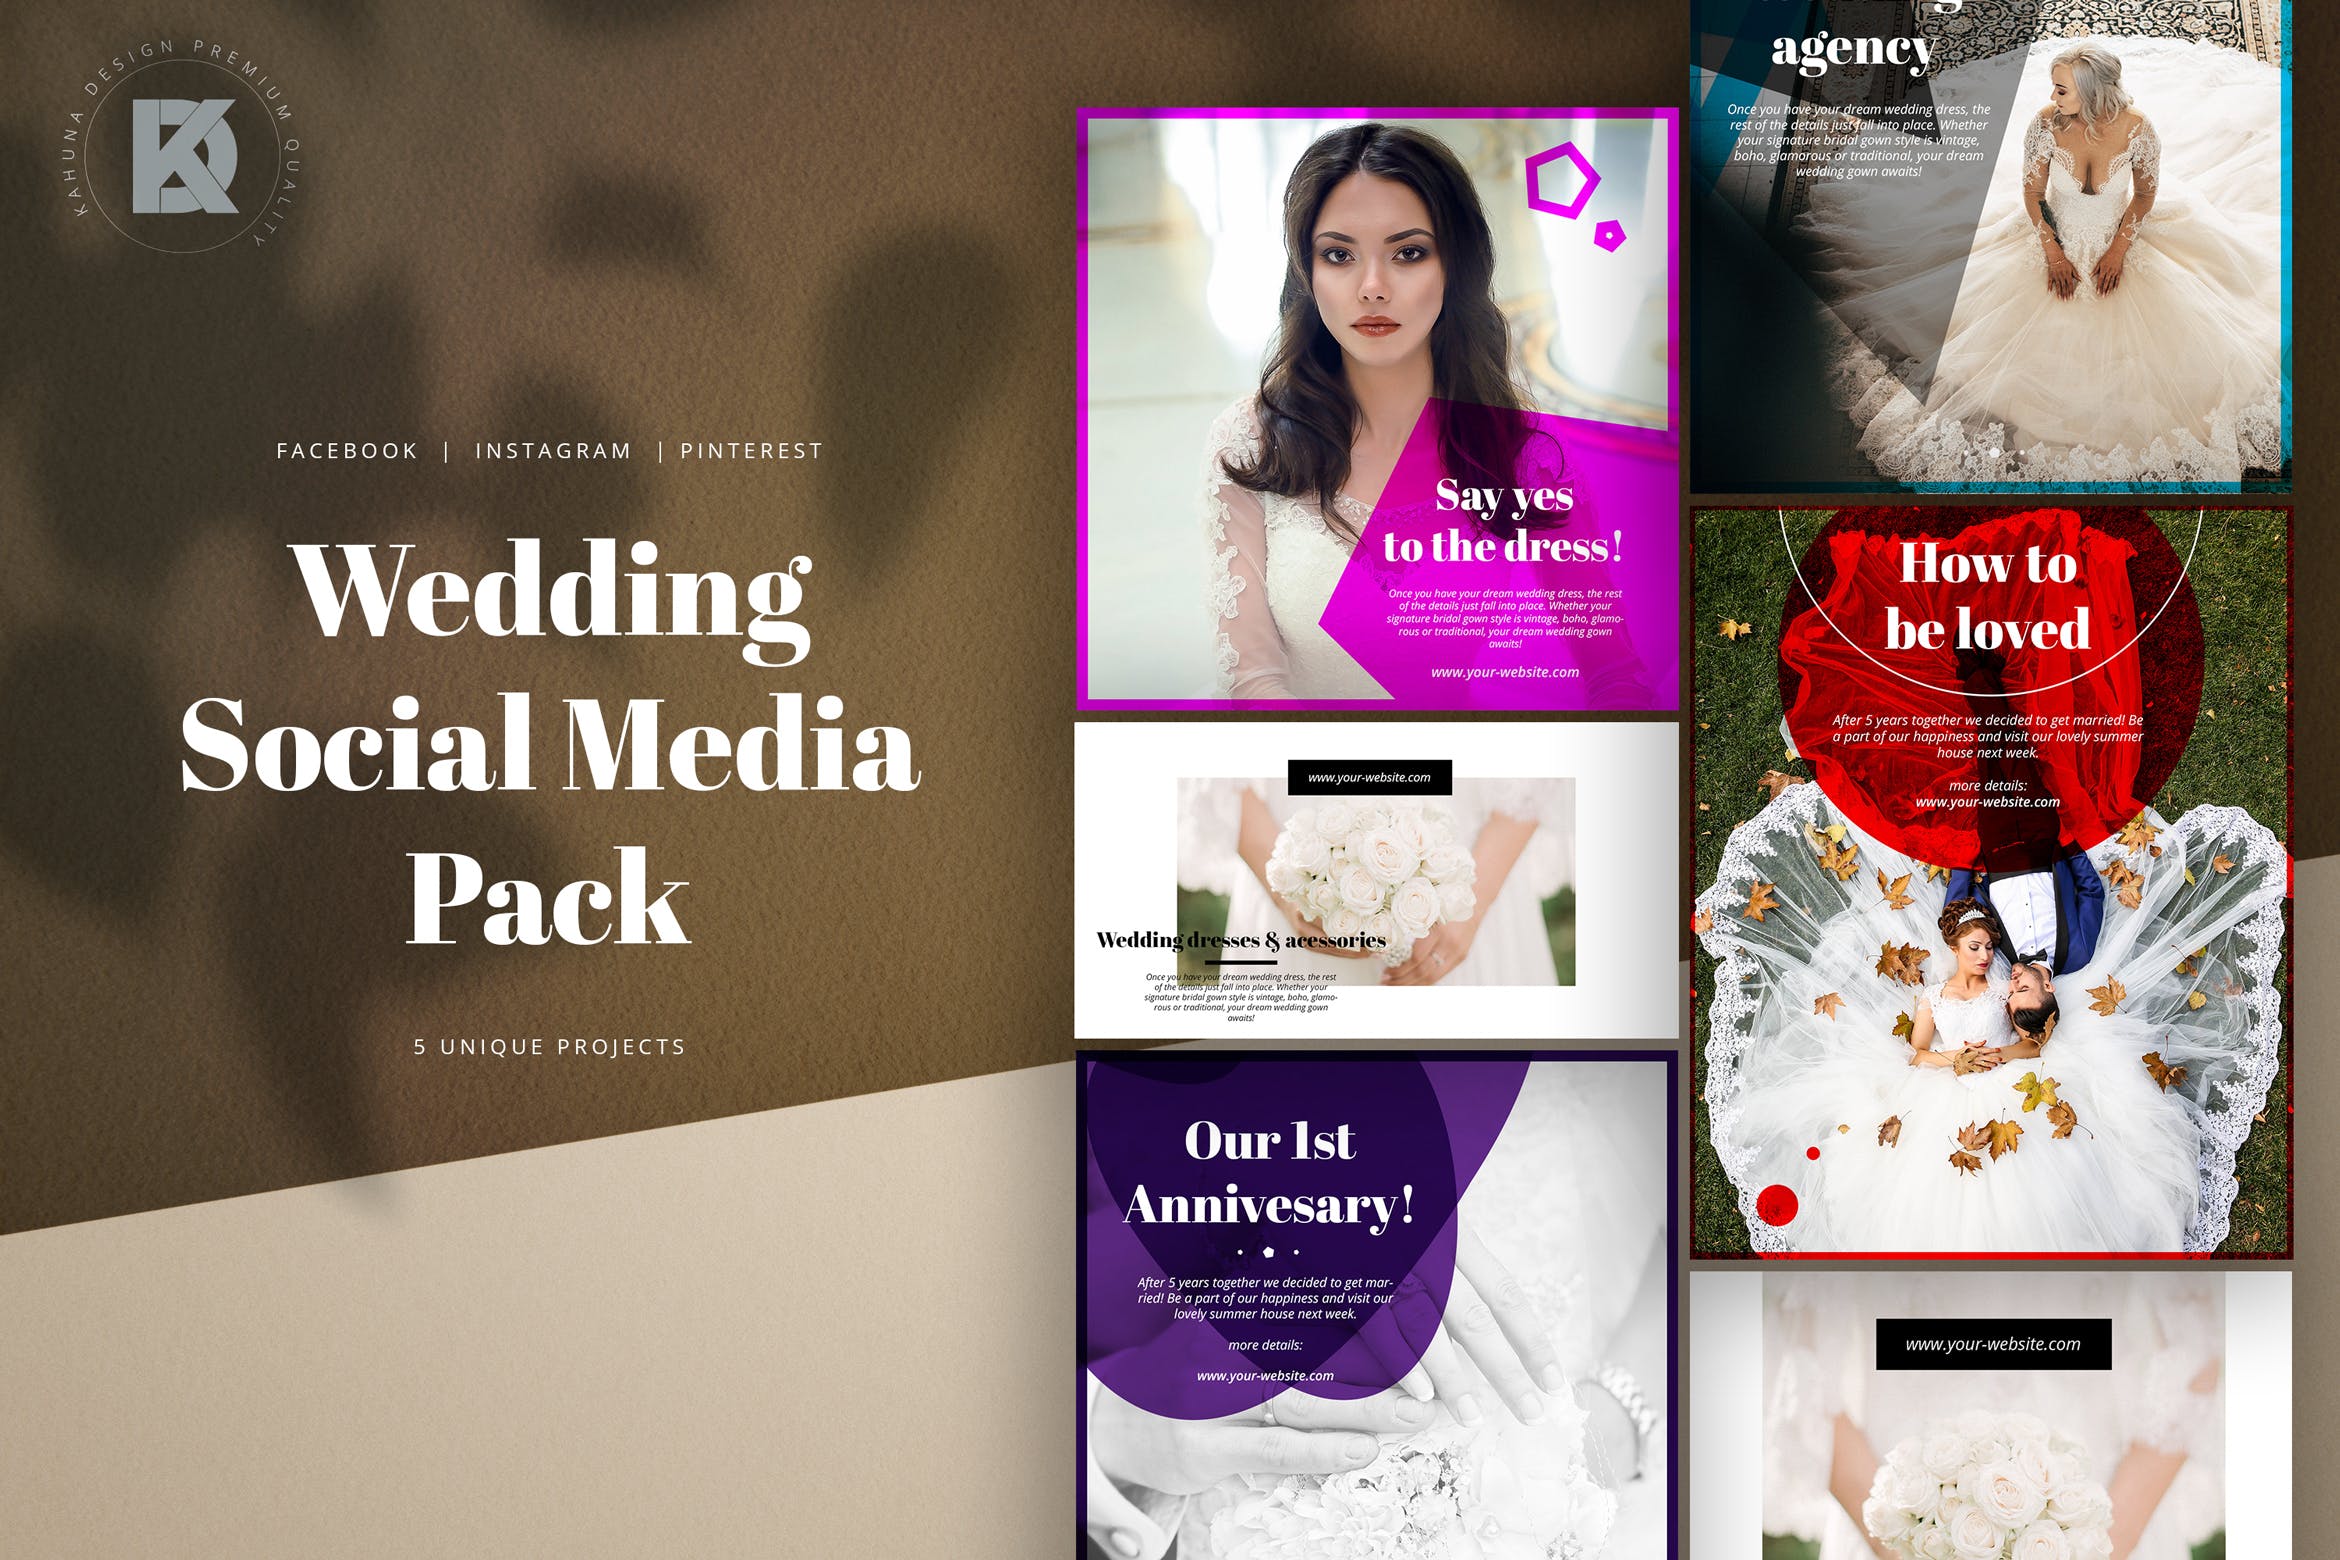 婚礼婚宴邀请社交媒体设计模板素材中国精选 Wedding Social Media Kit插图